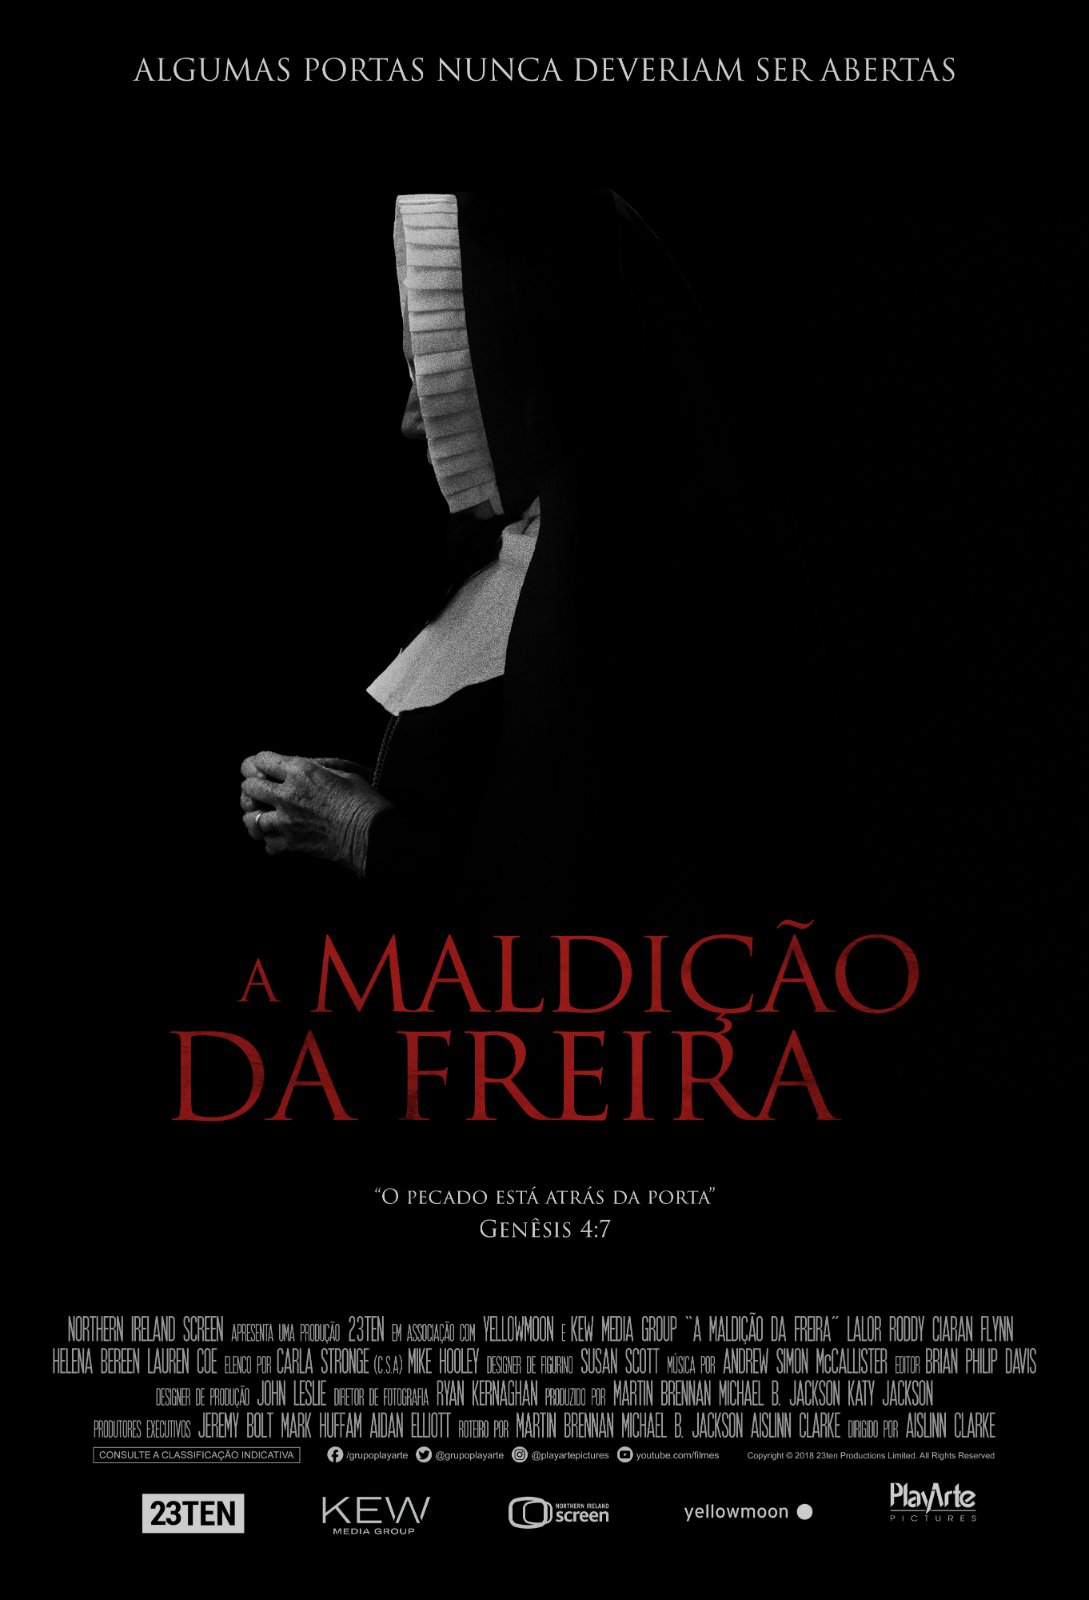 A maldição da freira' - Jornal O Globo